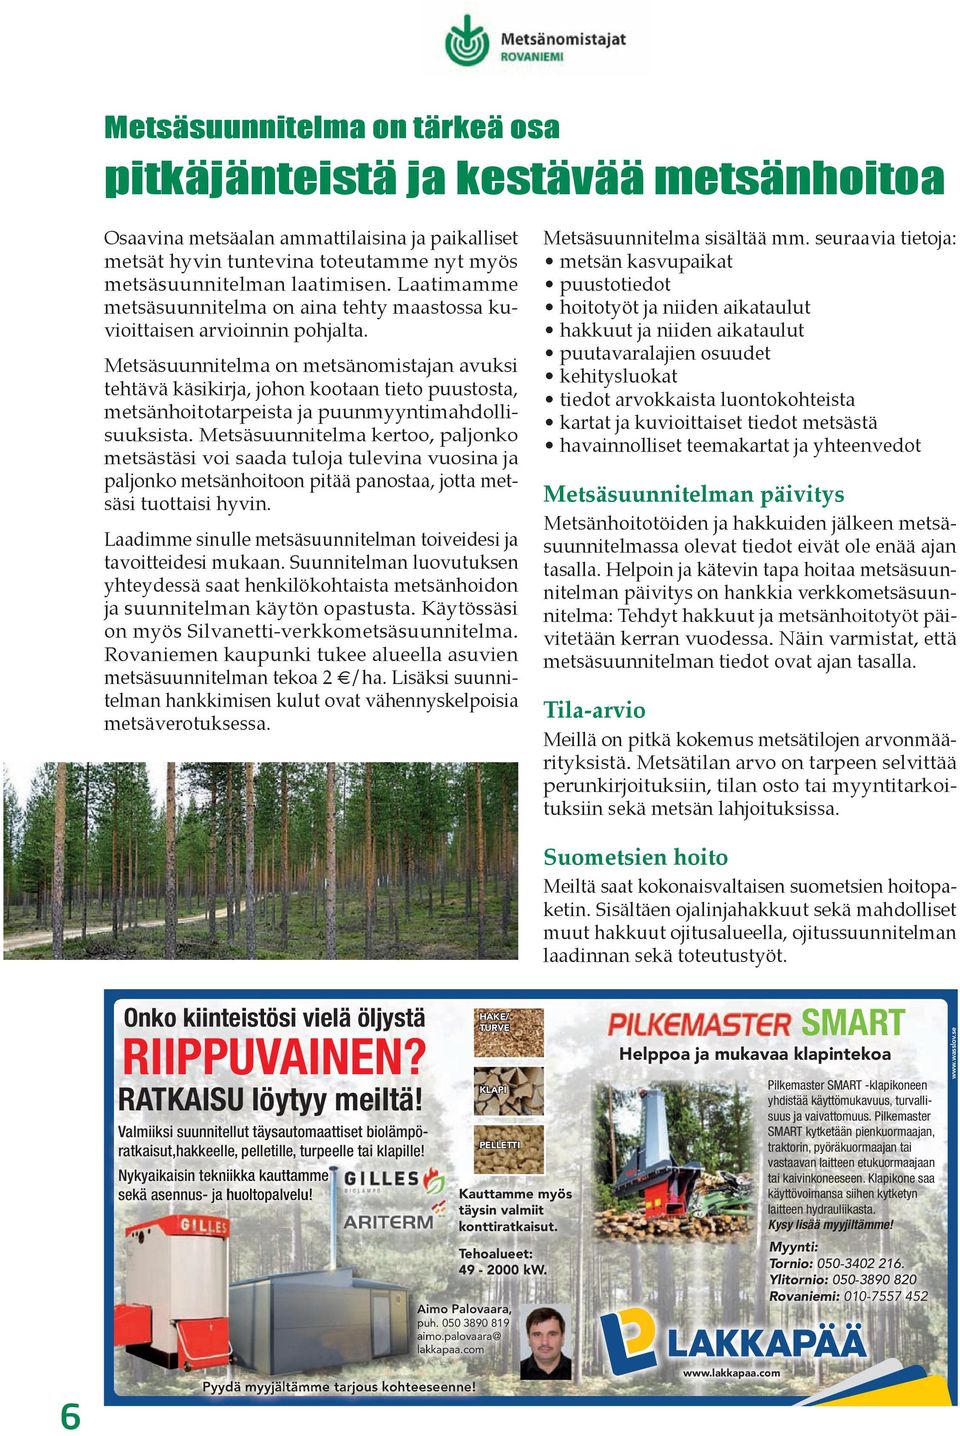 Metsäsuunnitelma on metsänomistajan avuksi tehtävä käsikirja, johon kootaan tieto puustosta, metsänhoitotarpeista ja puunmyyntimahdollisuuksista.